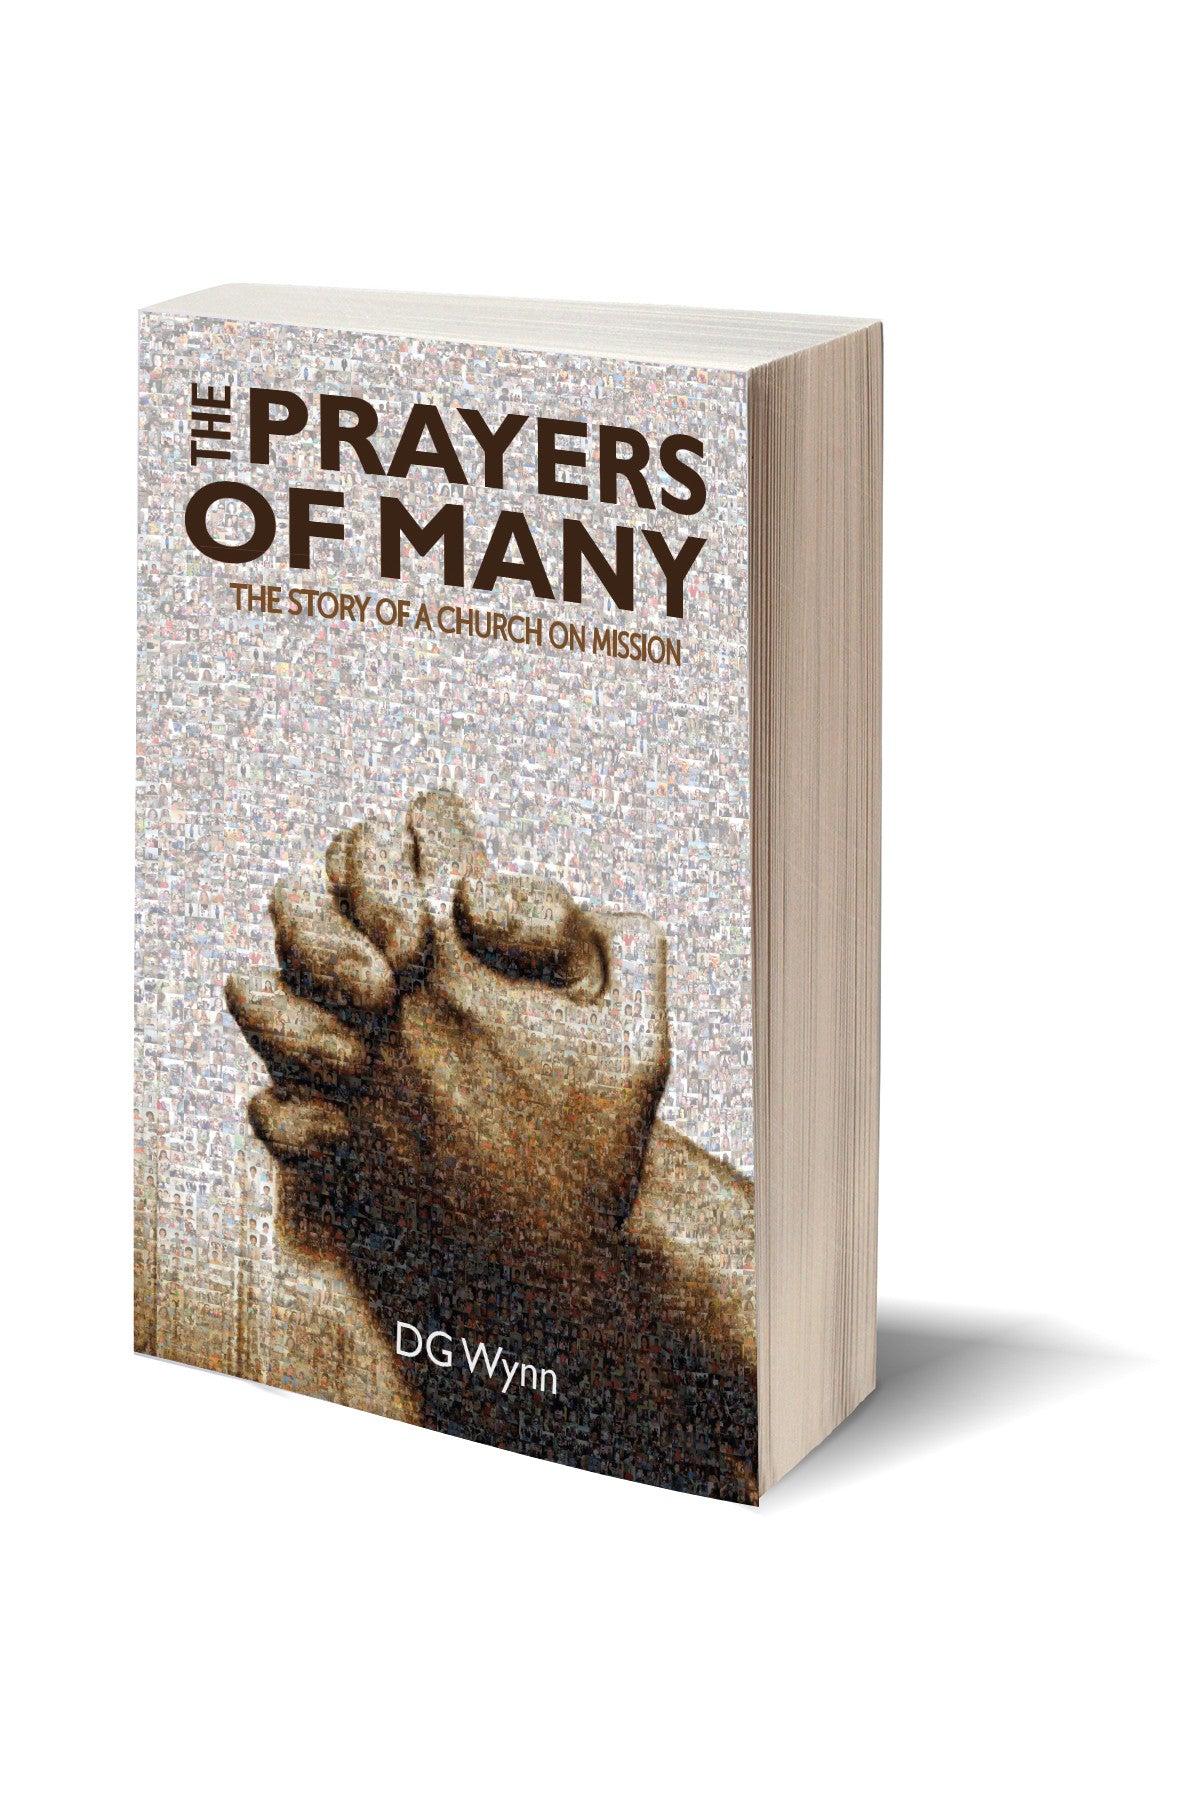 The Prayers of Many